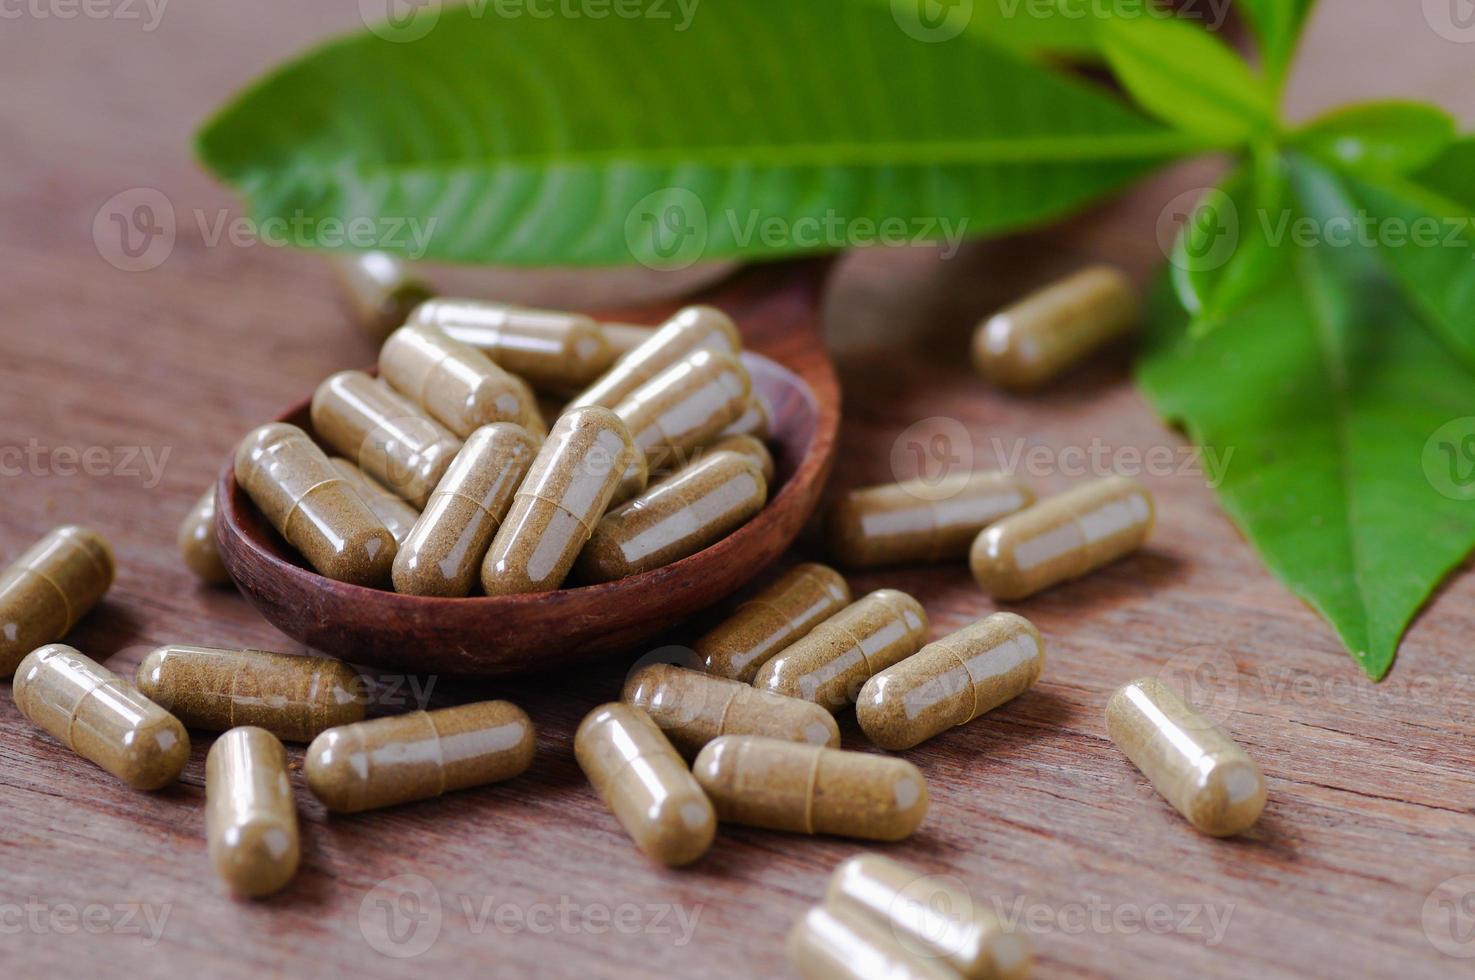 capsules de médicaments à base de plantes photo